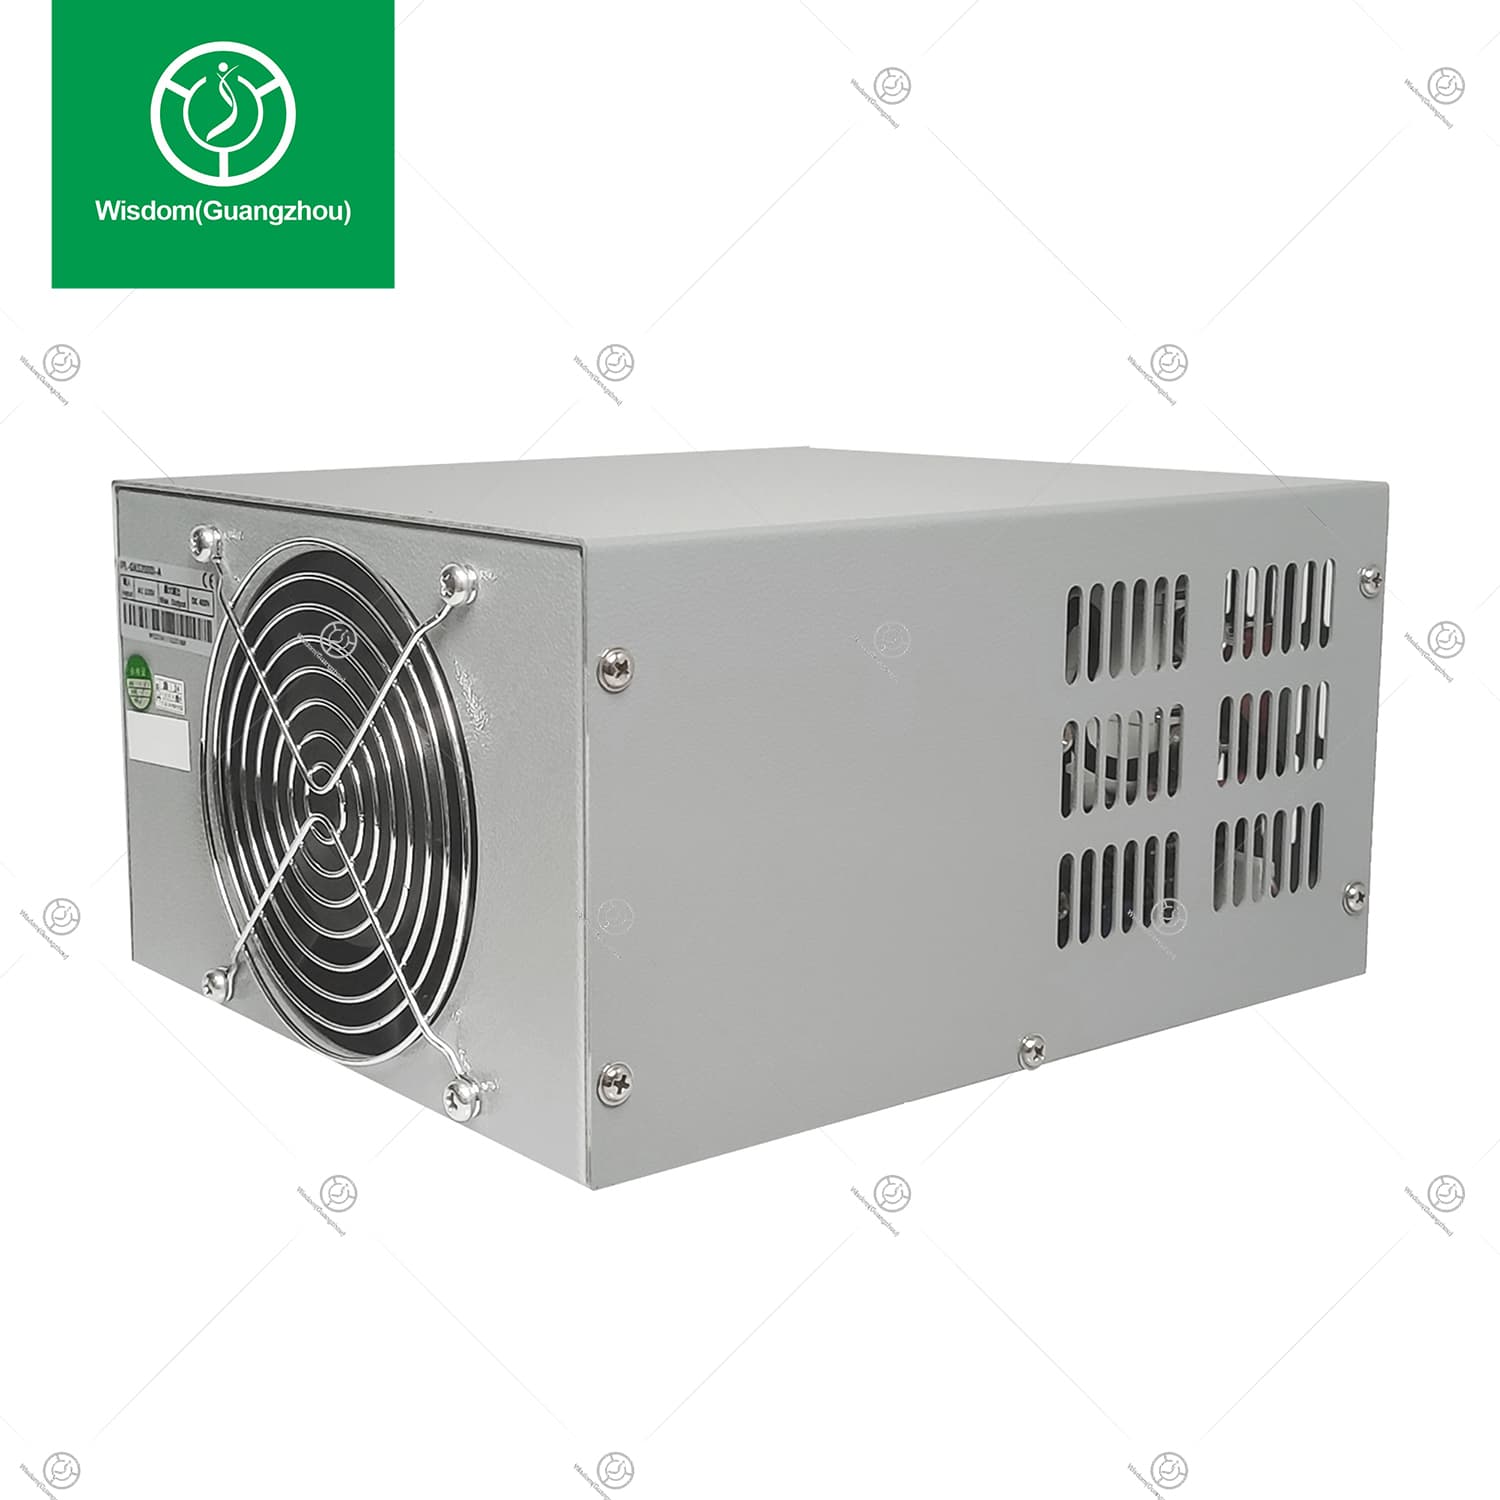 2000W-400V IPL Power Supply (A)